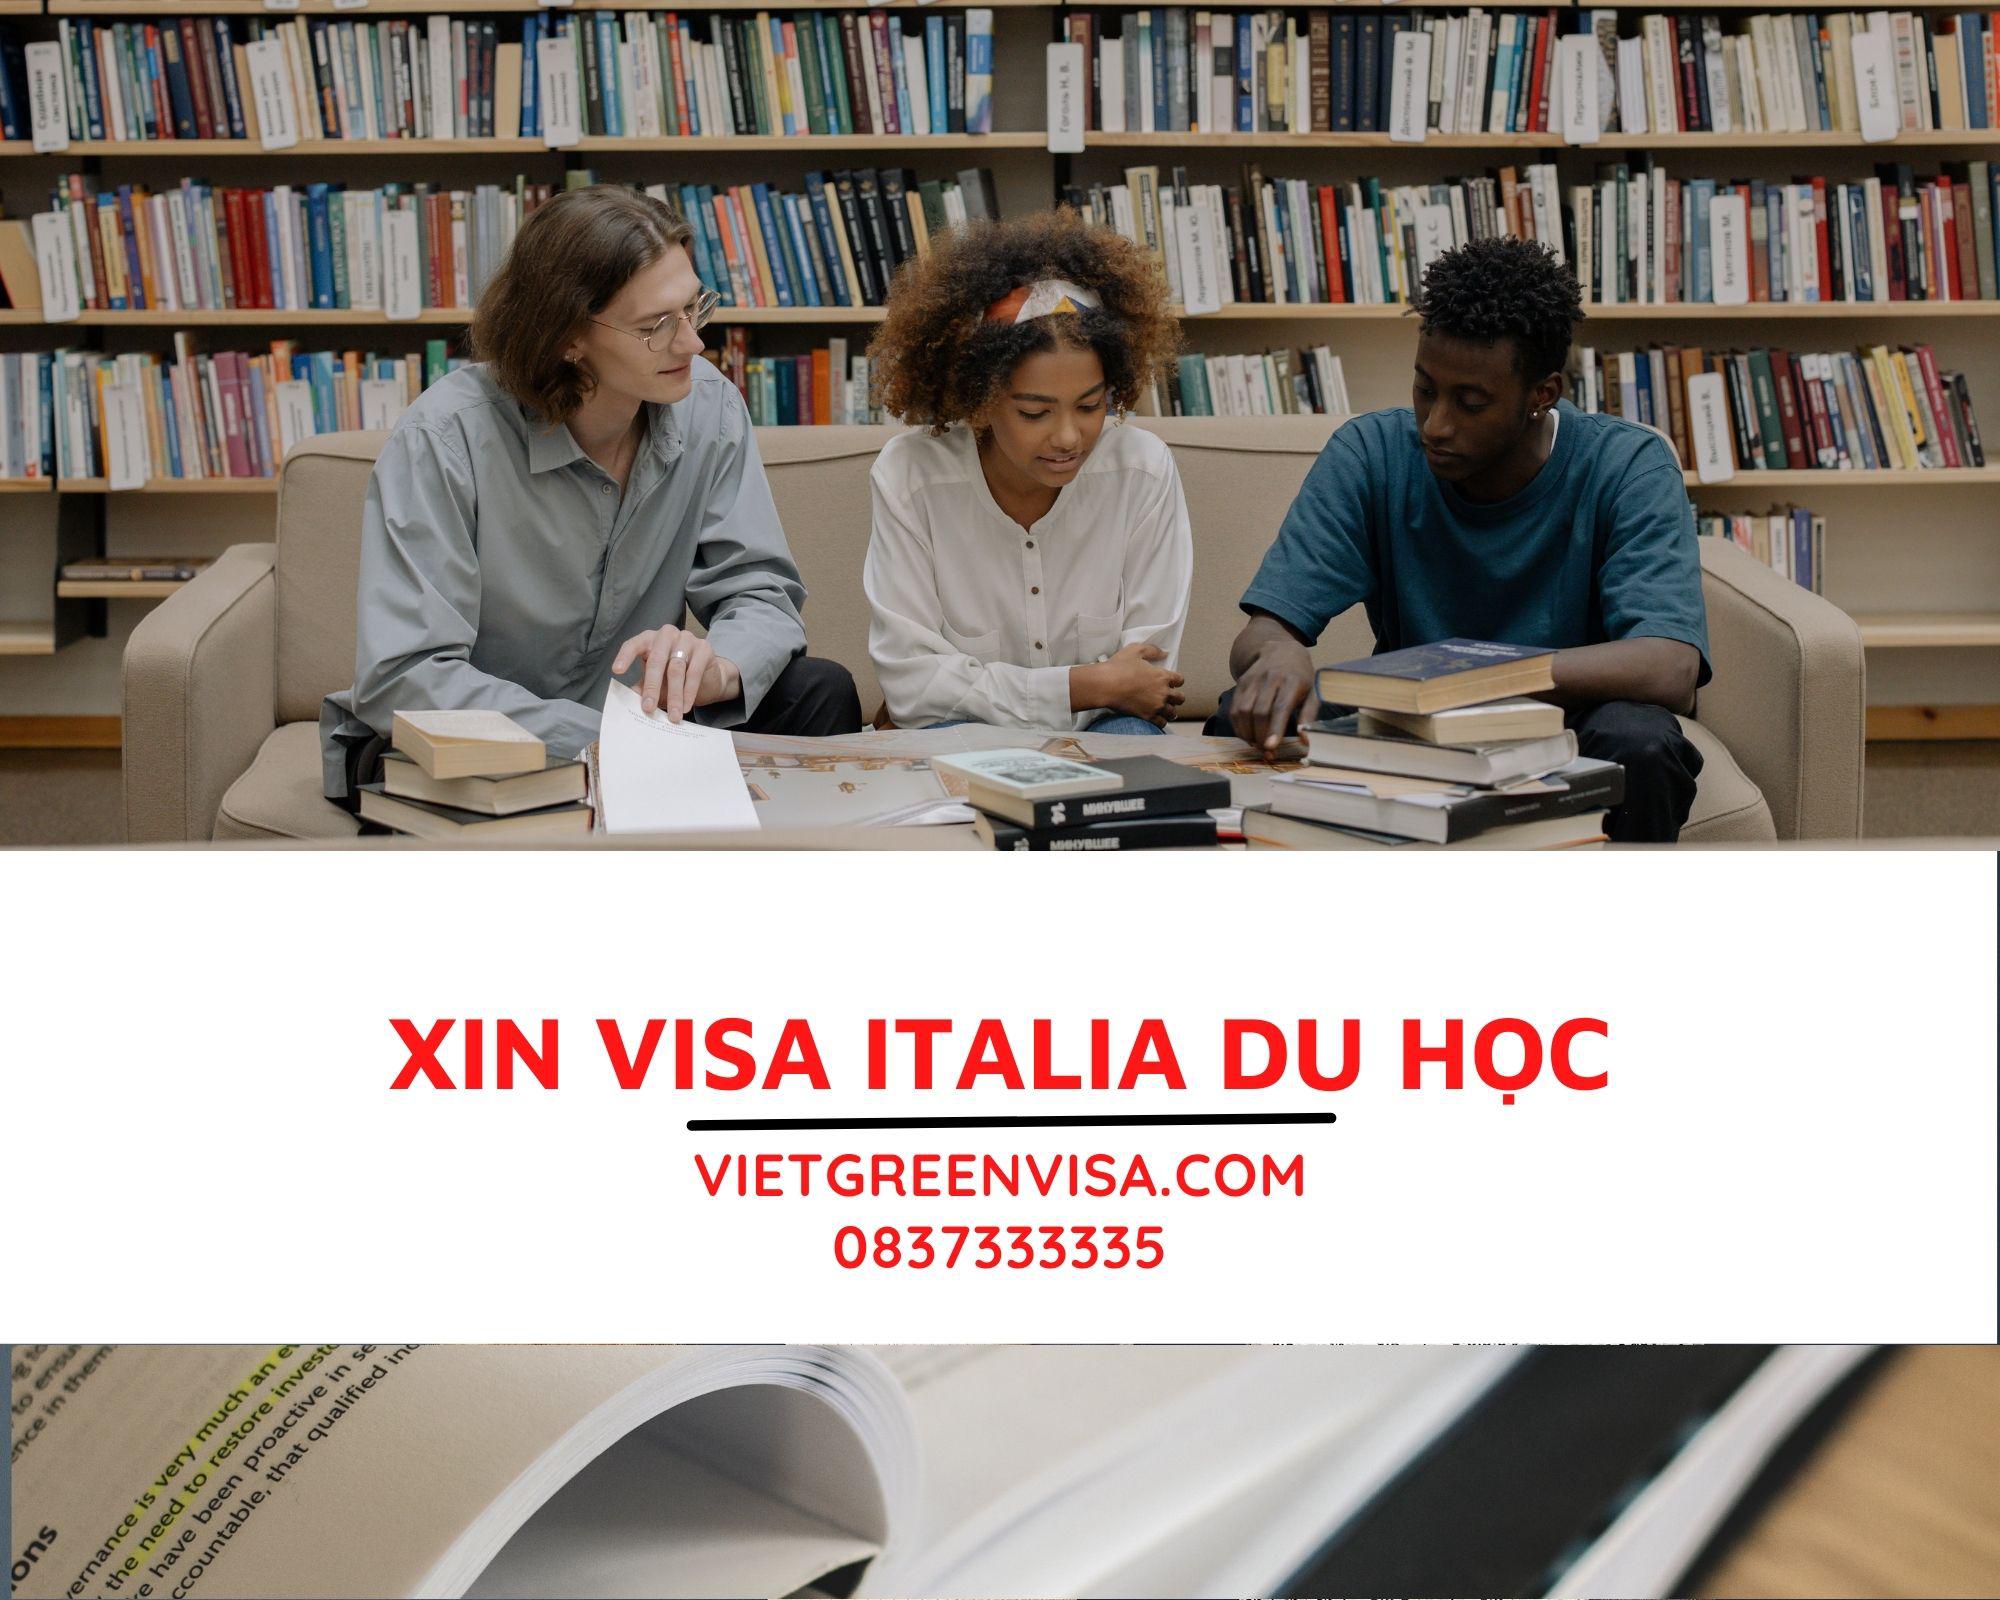 Dịch vụ hỗ trợ visa du học Italia trọn gói